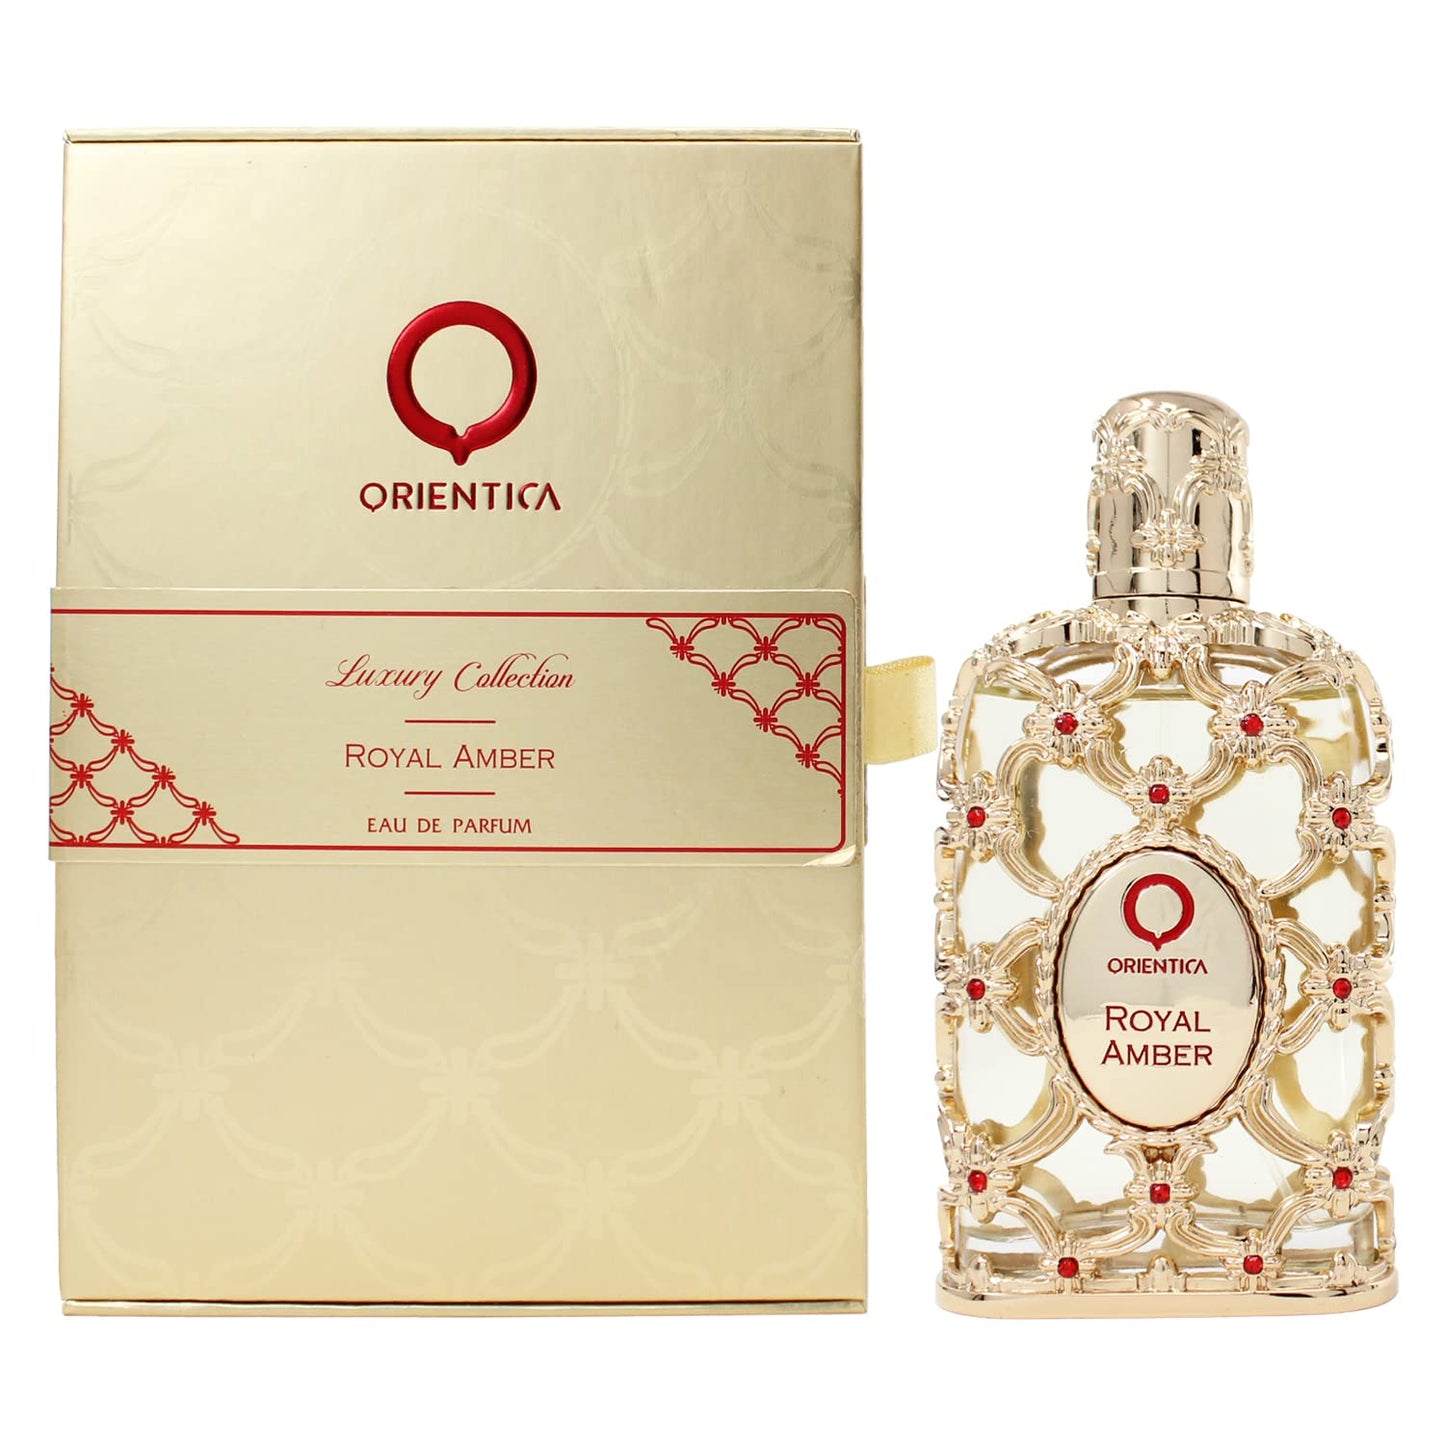 Orientica Luxury Collection Royal Amber Eau de Parfum Unisex 2.7 oz